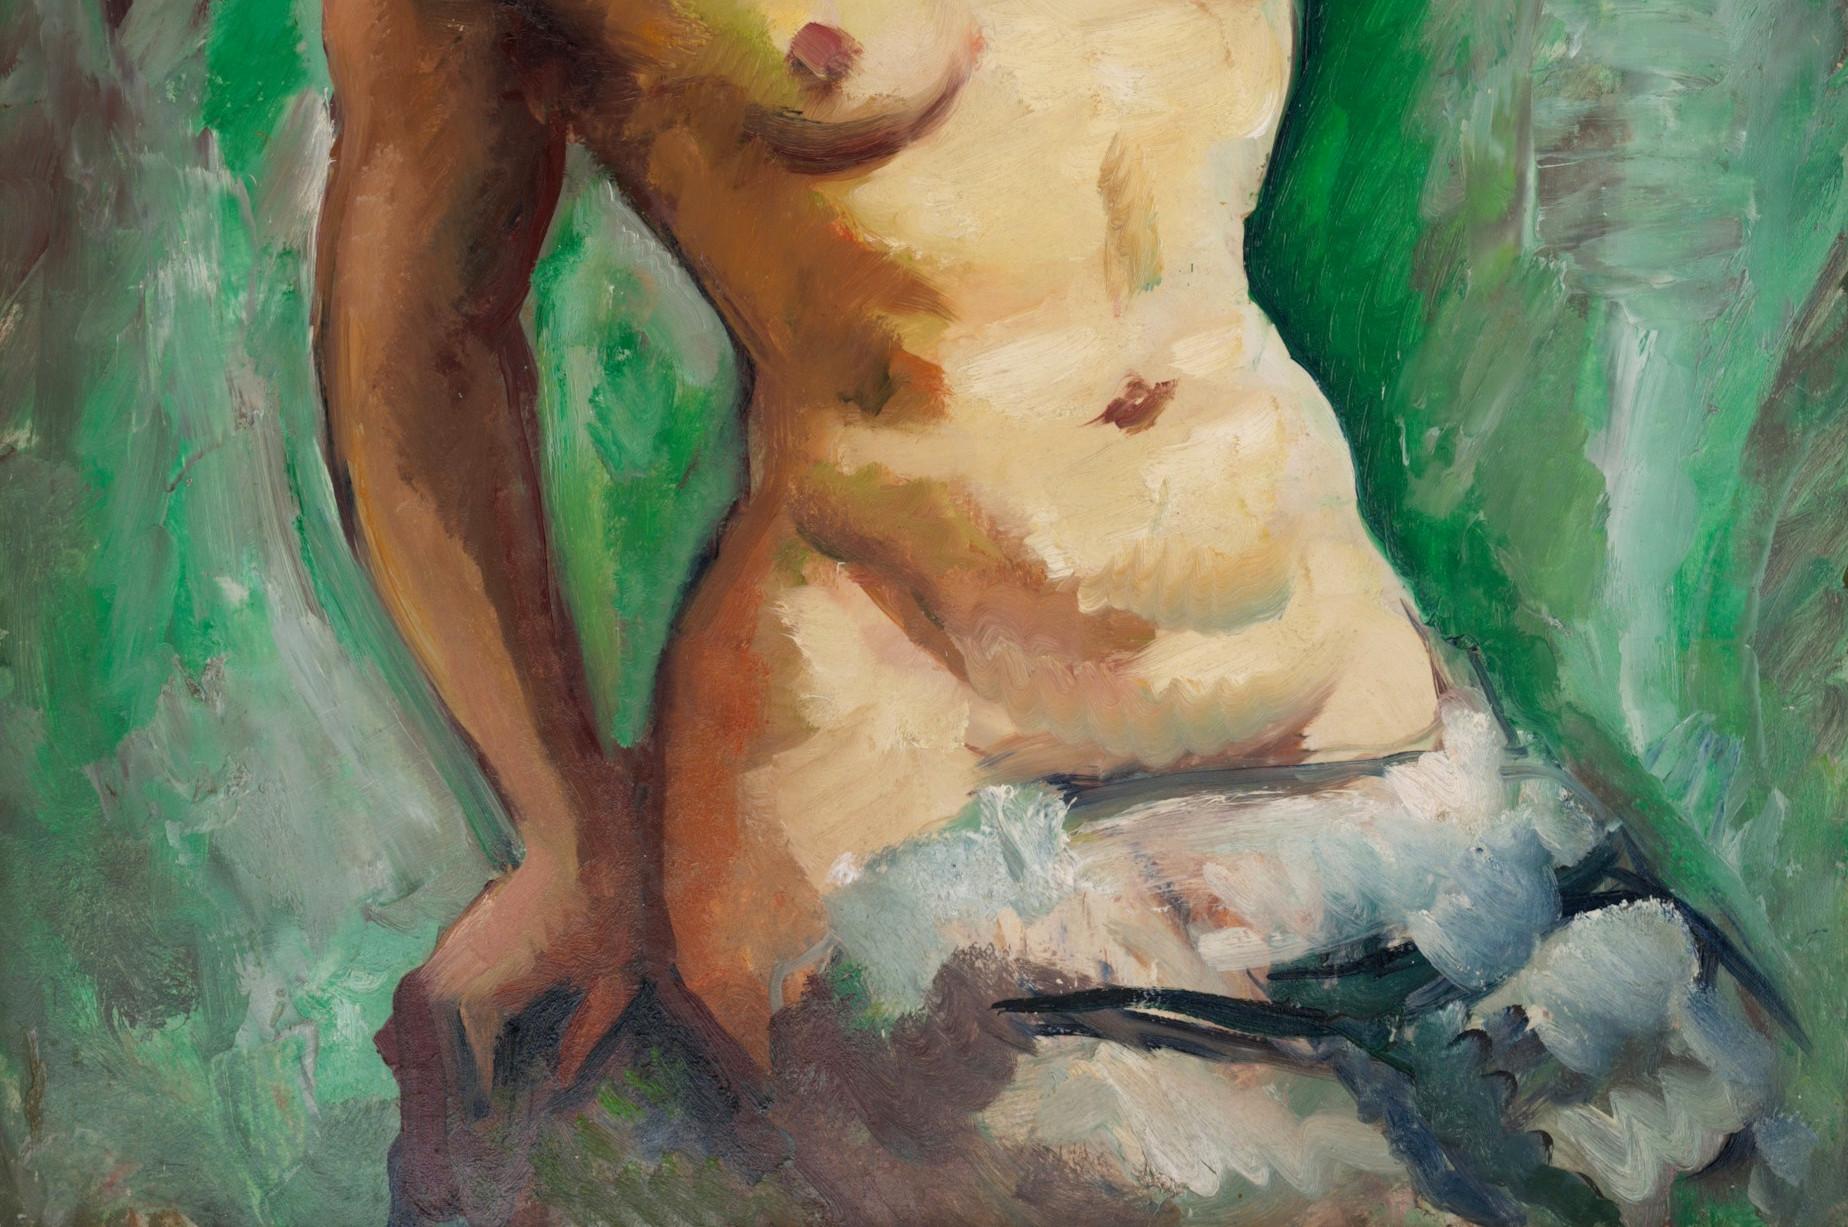 Charles PICART LE DOUX, Modell auf grünem Hintergrund, Öl auf Isorel, 1949 (Braun), Portrait Painting, von Charles Picart le Doux